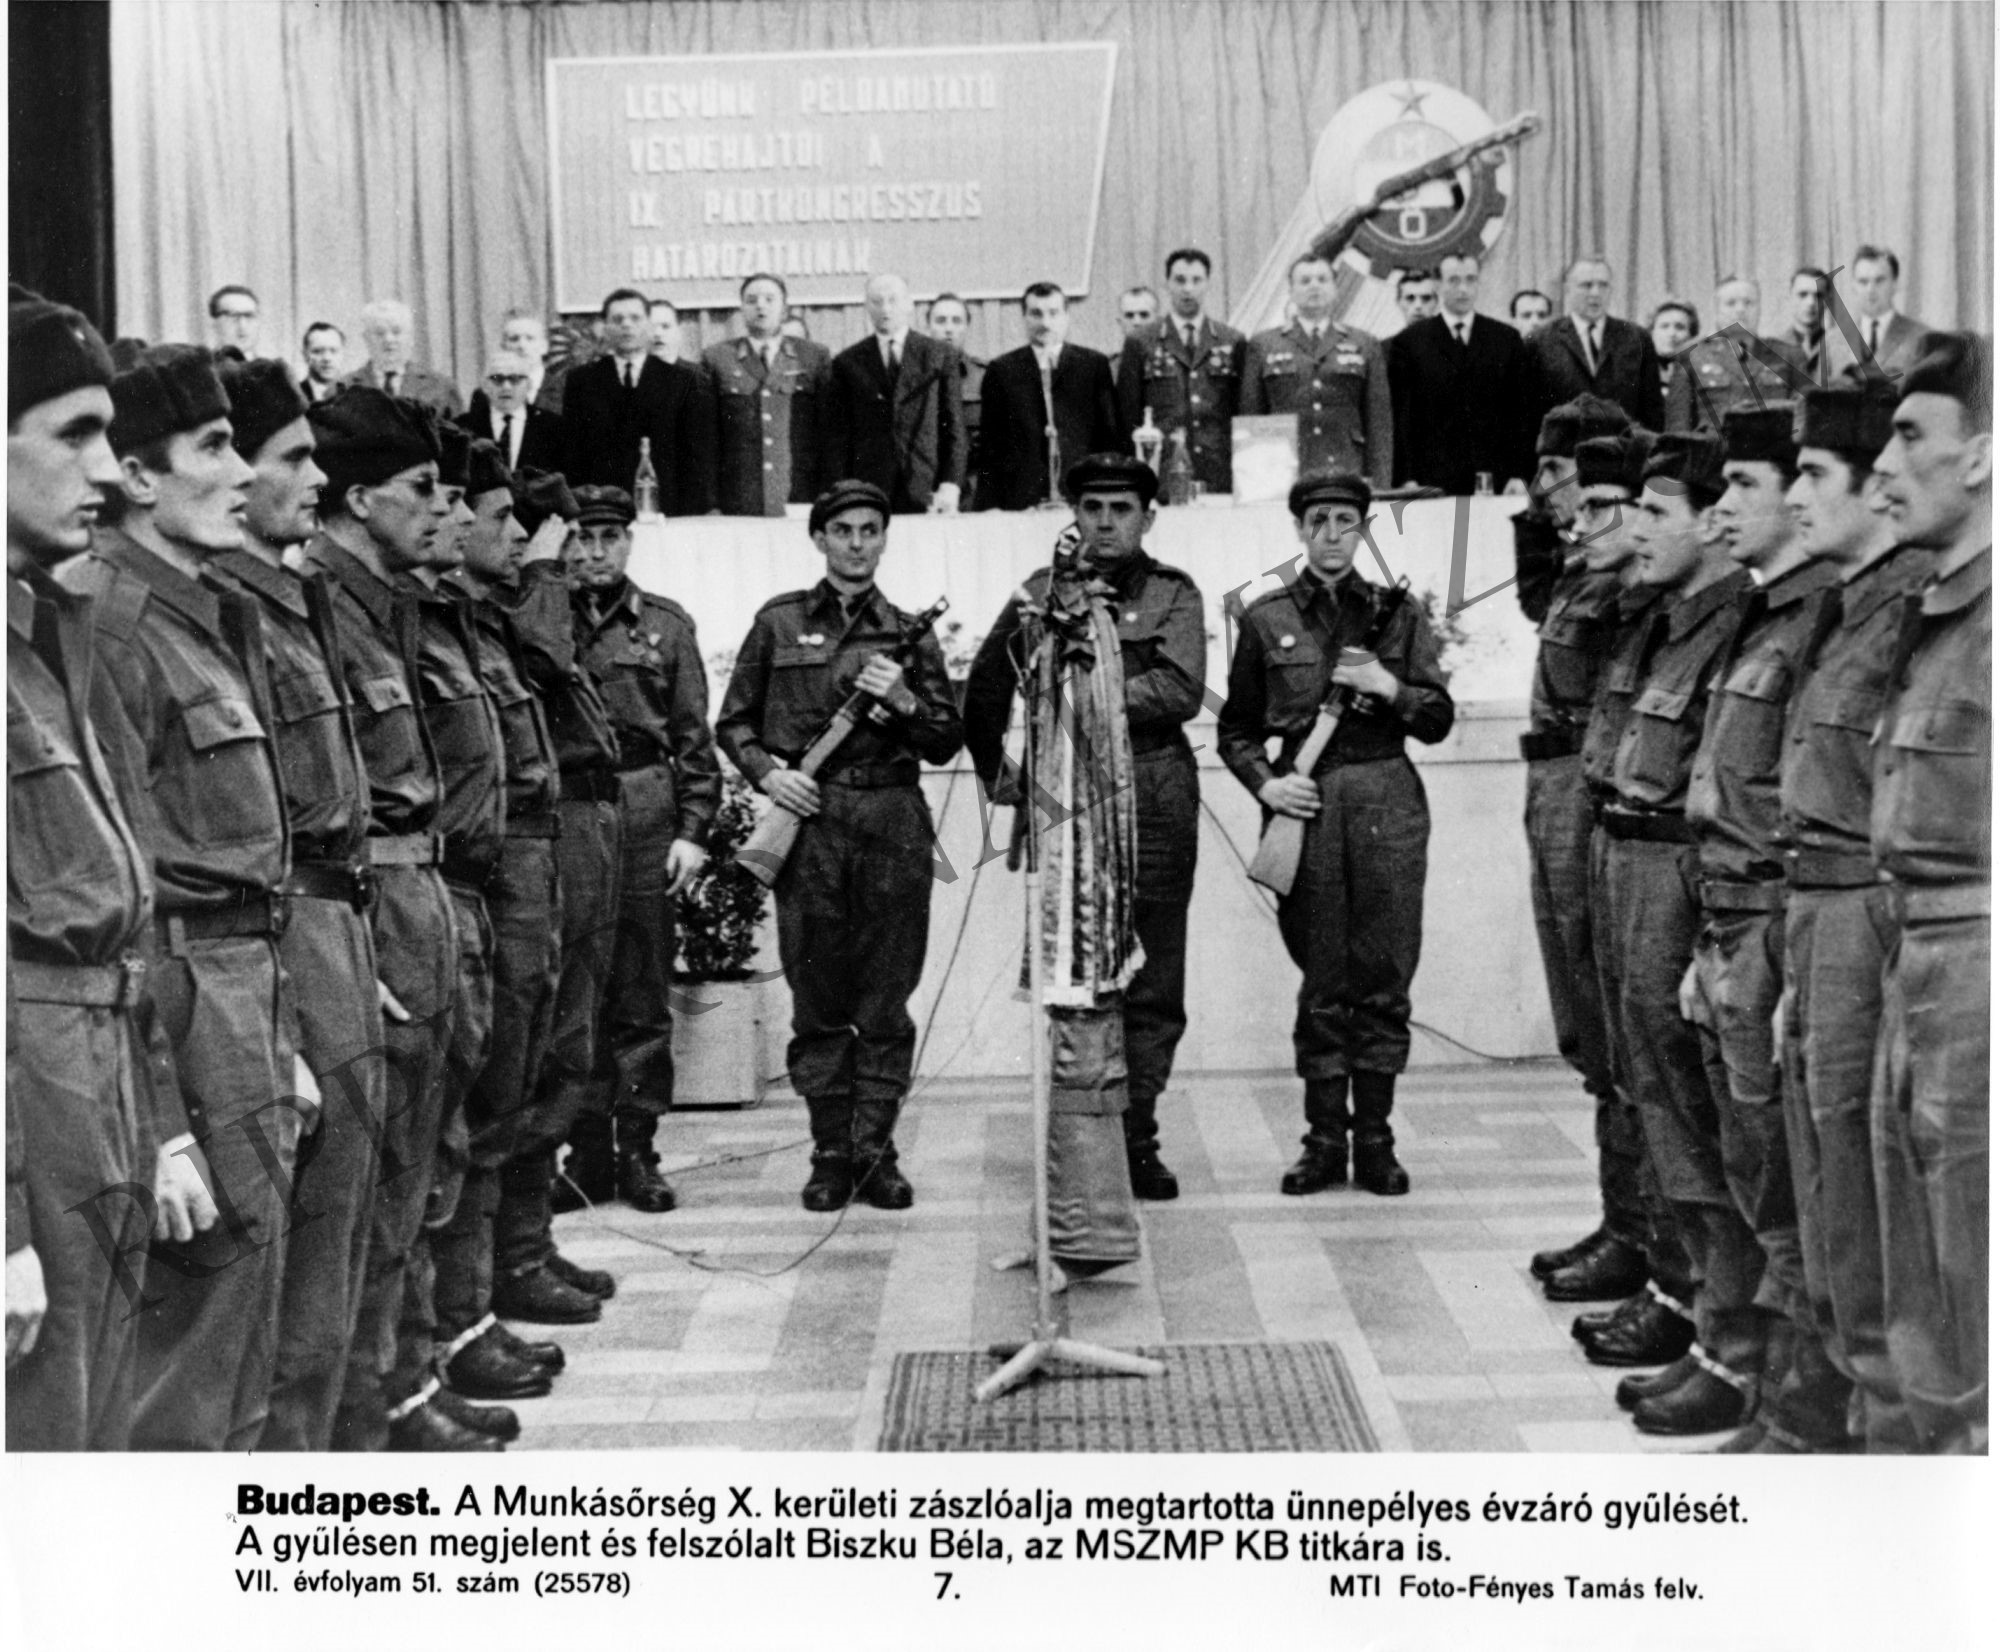 A Munkásőrség X. kerületi zászlóalja megtartotta ünnepélyes évzáró gyűlését, amelyen felszólalt Biszku Béla, az MSZMP KB titkára (Rippl-Rónai Múzeum CC BY-NC-SA)